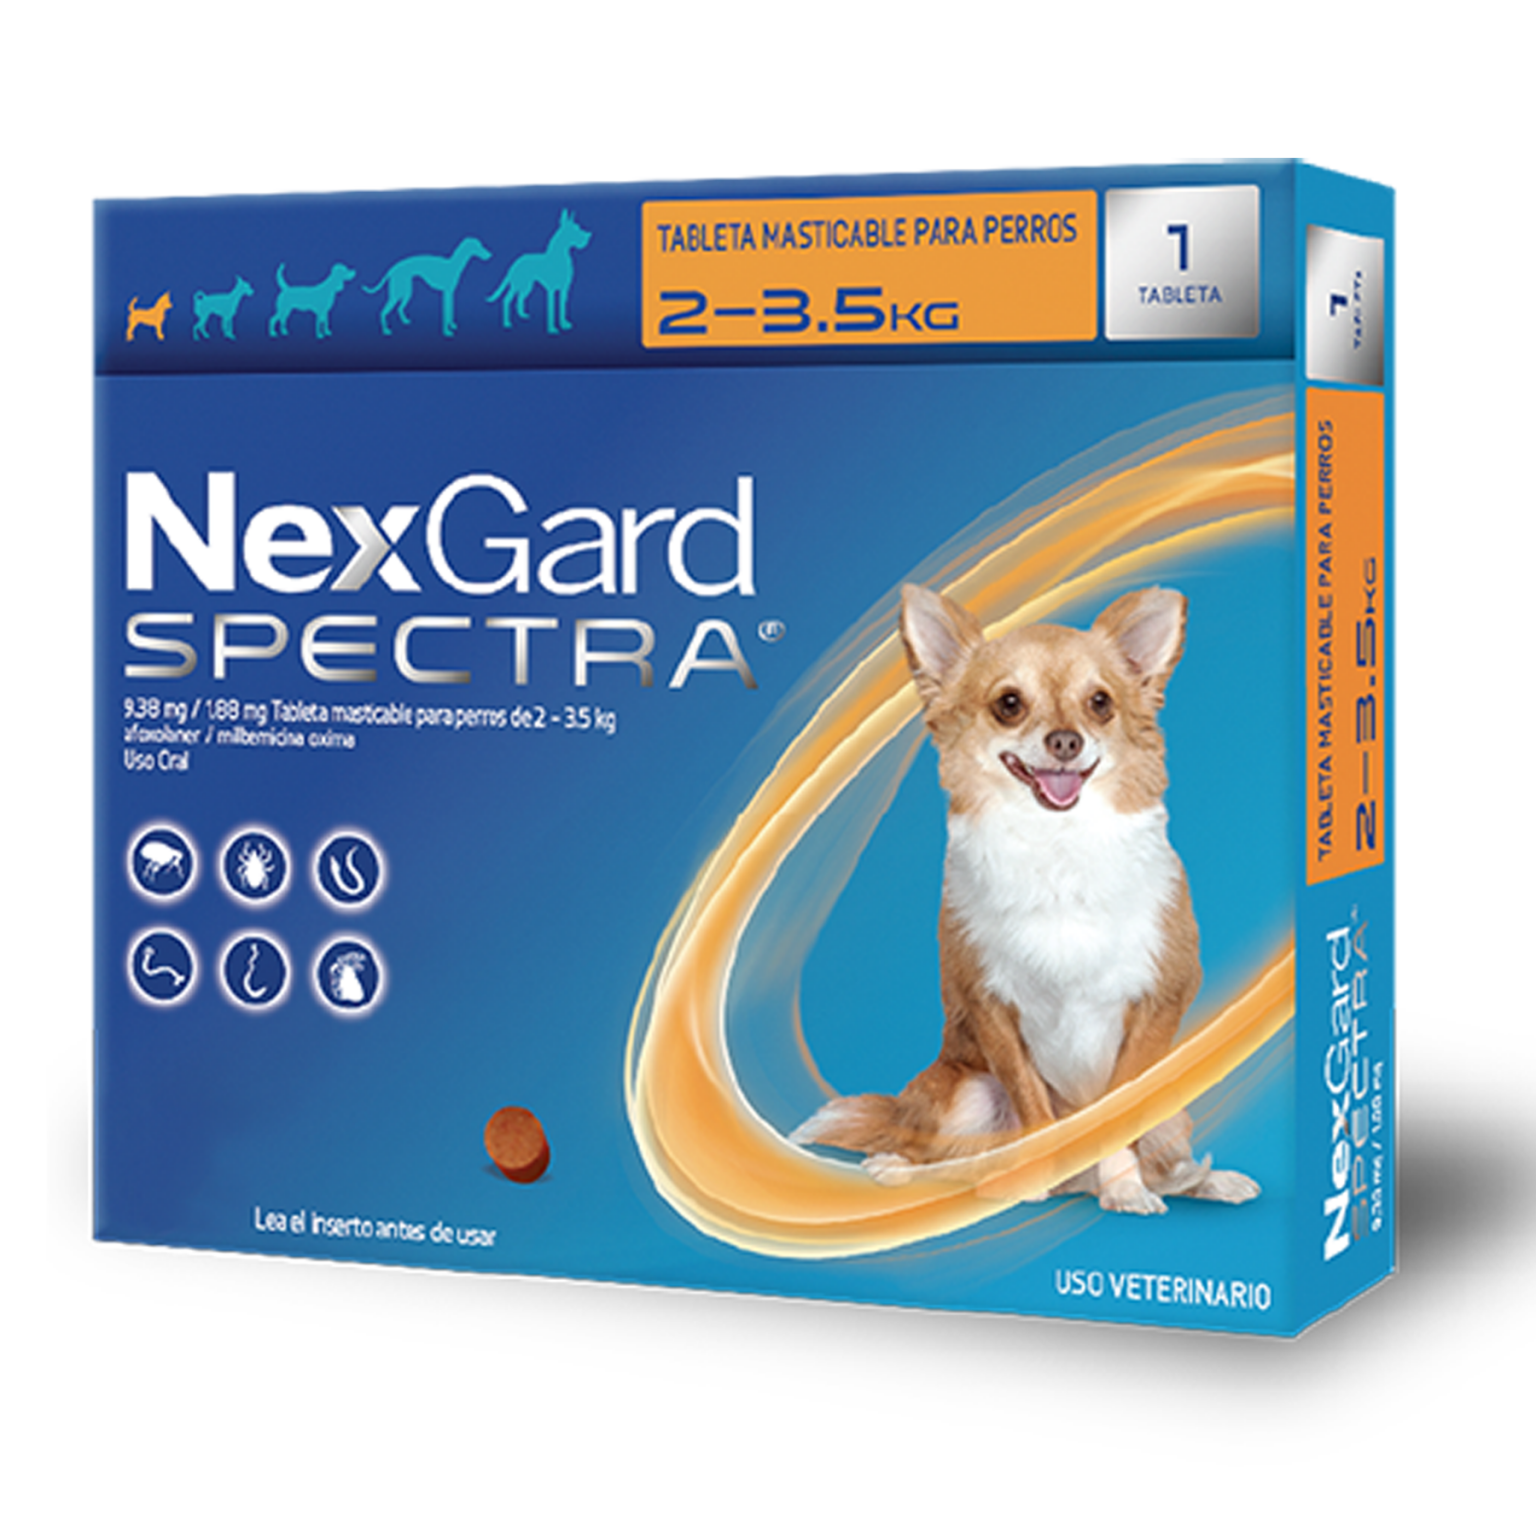 Нексгард спектра отзывы. NEXGARD Plus Dog. NEXGARD Spectra в руках.